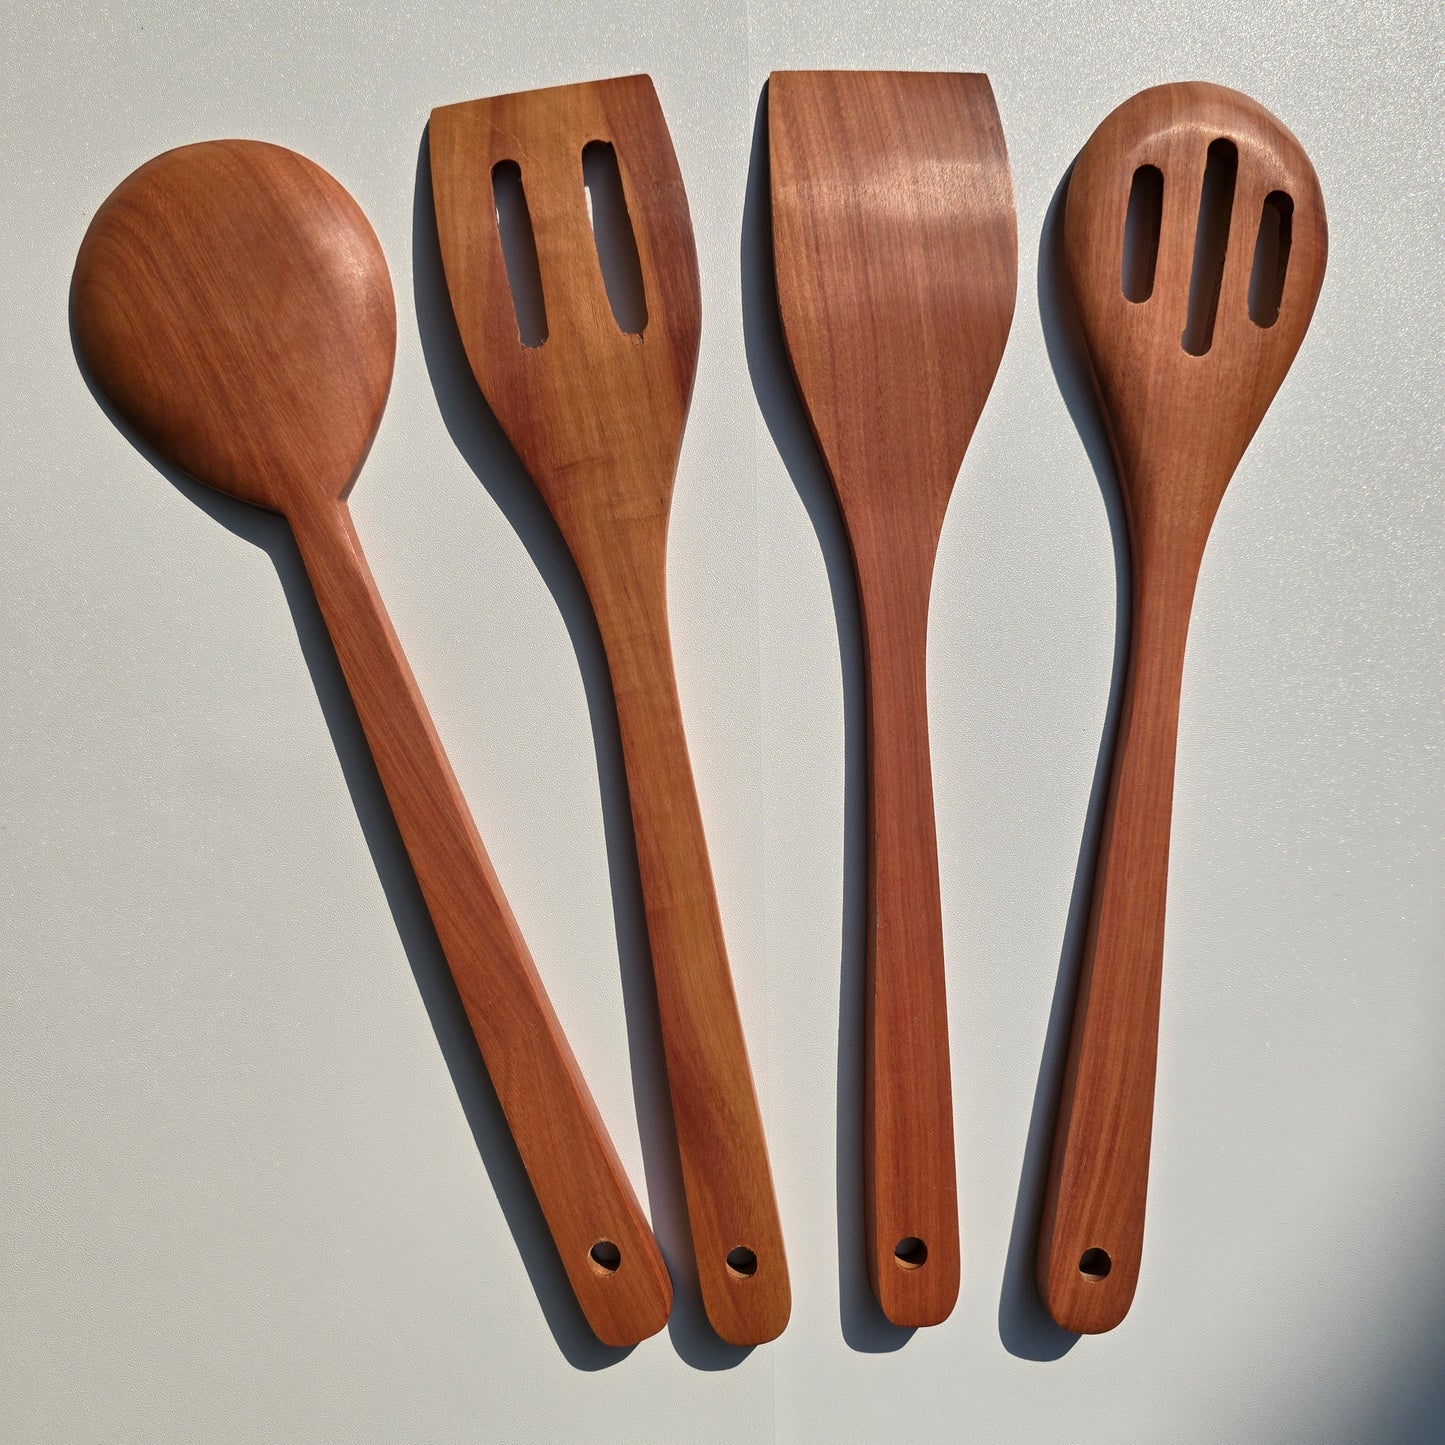 Wooden Teak Spatula Set of 4pcs